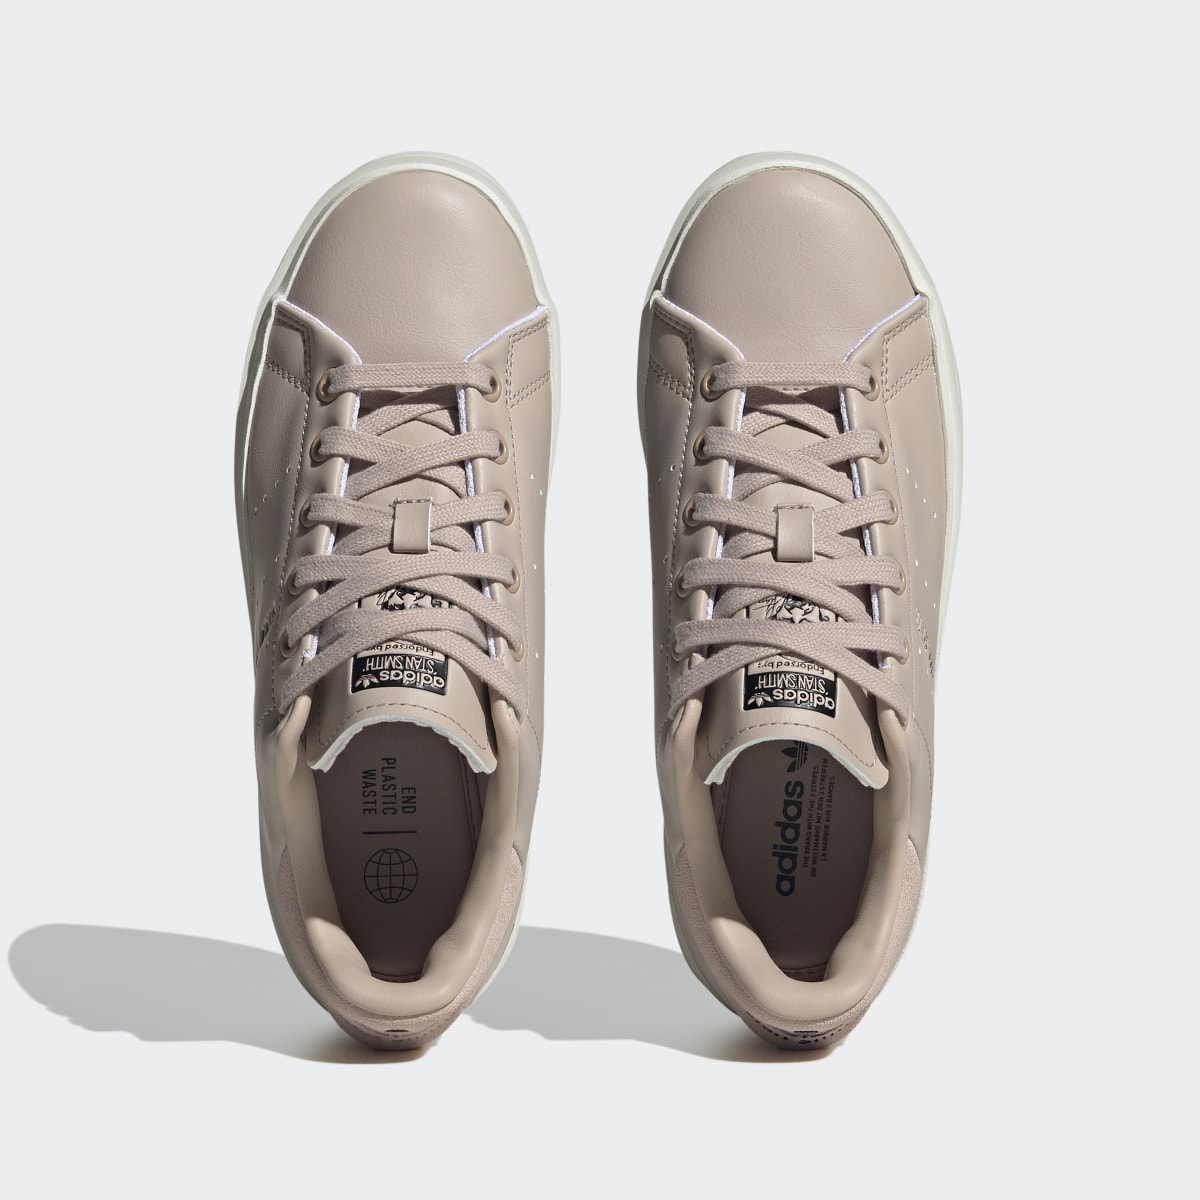 Adidas Stan Smith Bonega Shoes. 8